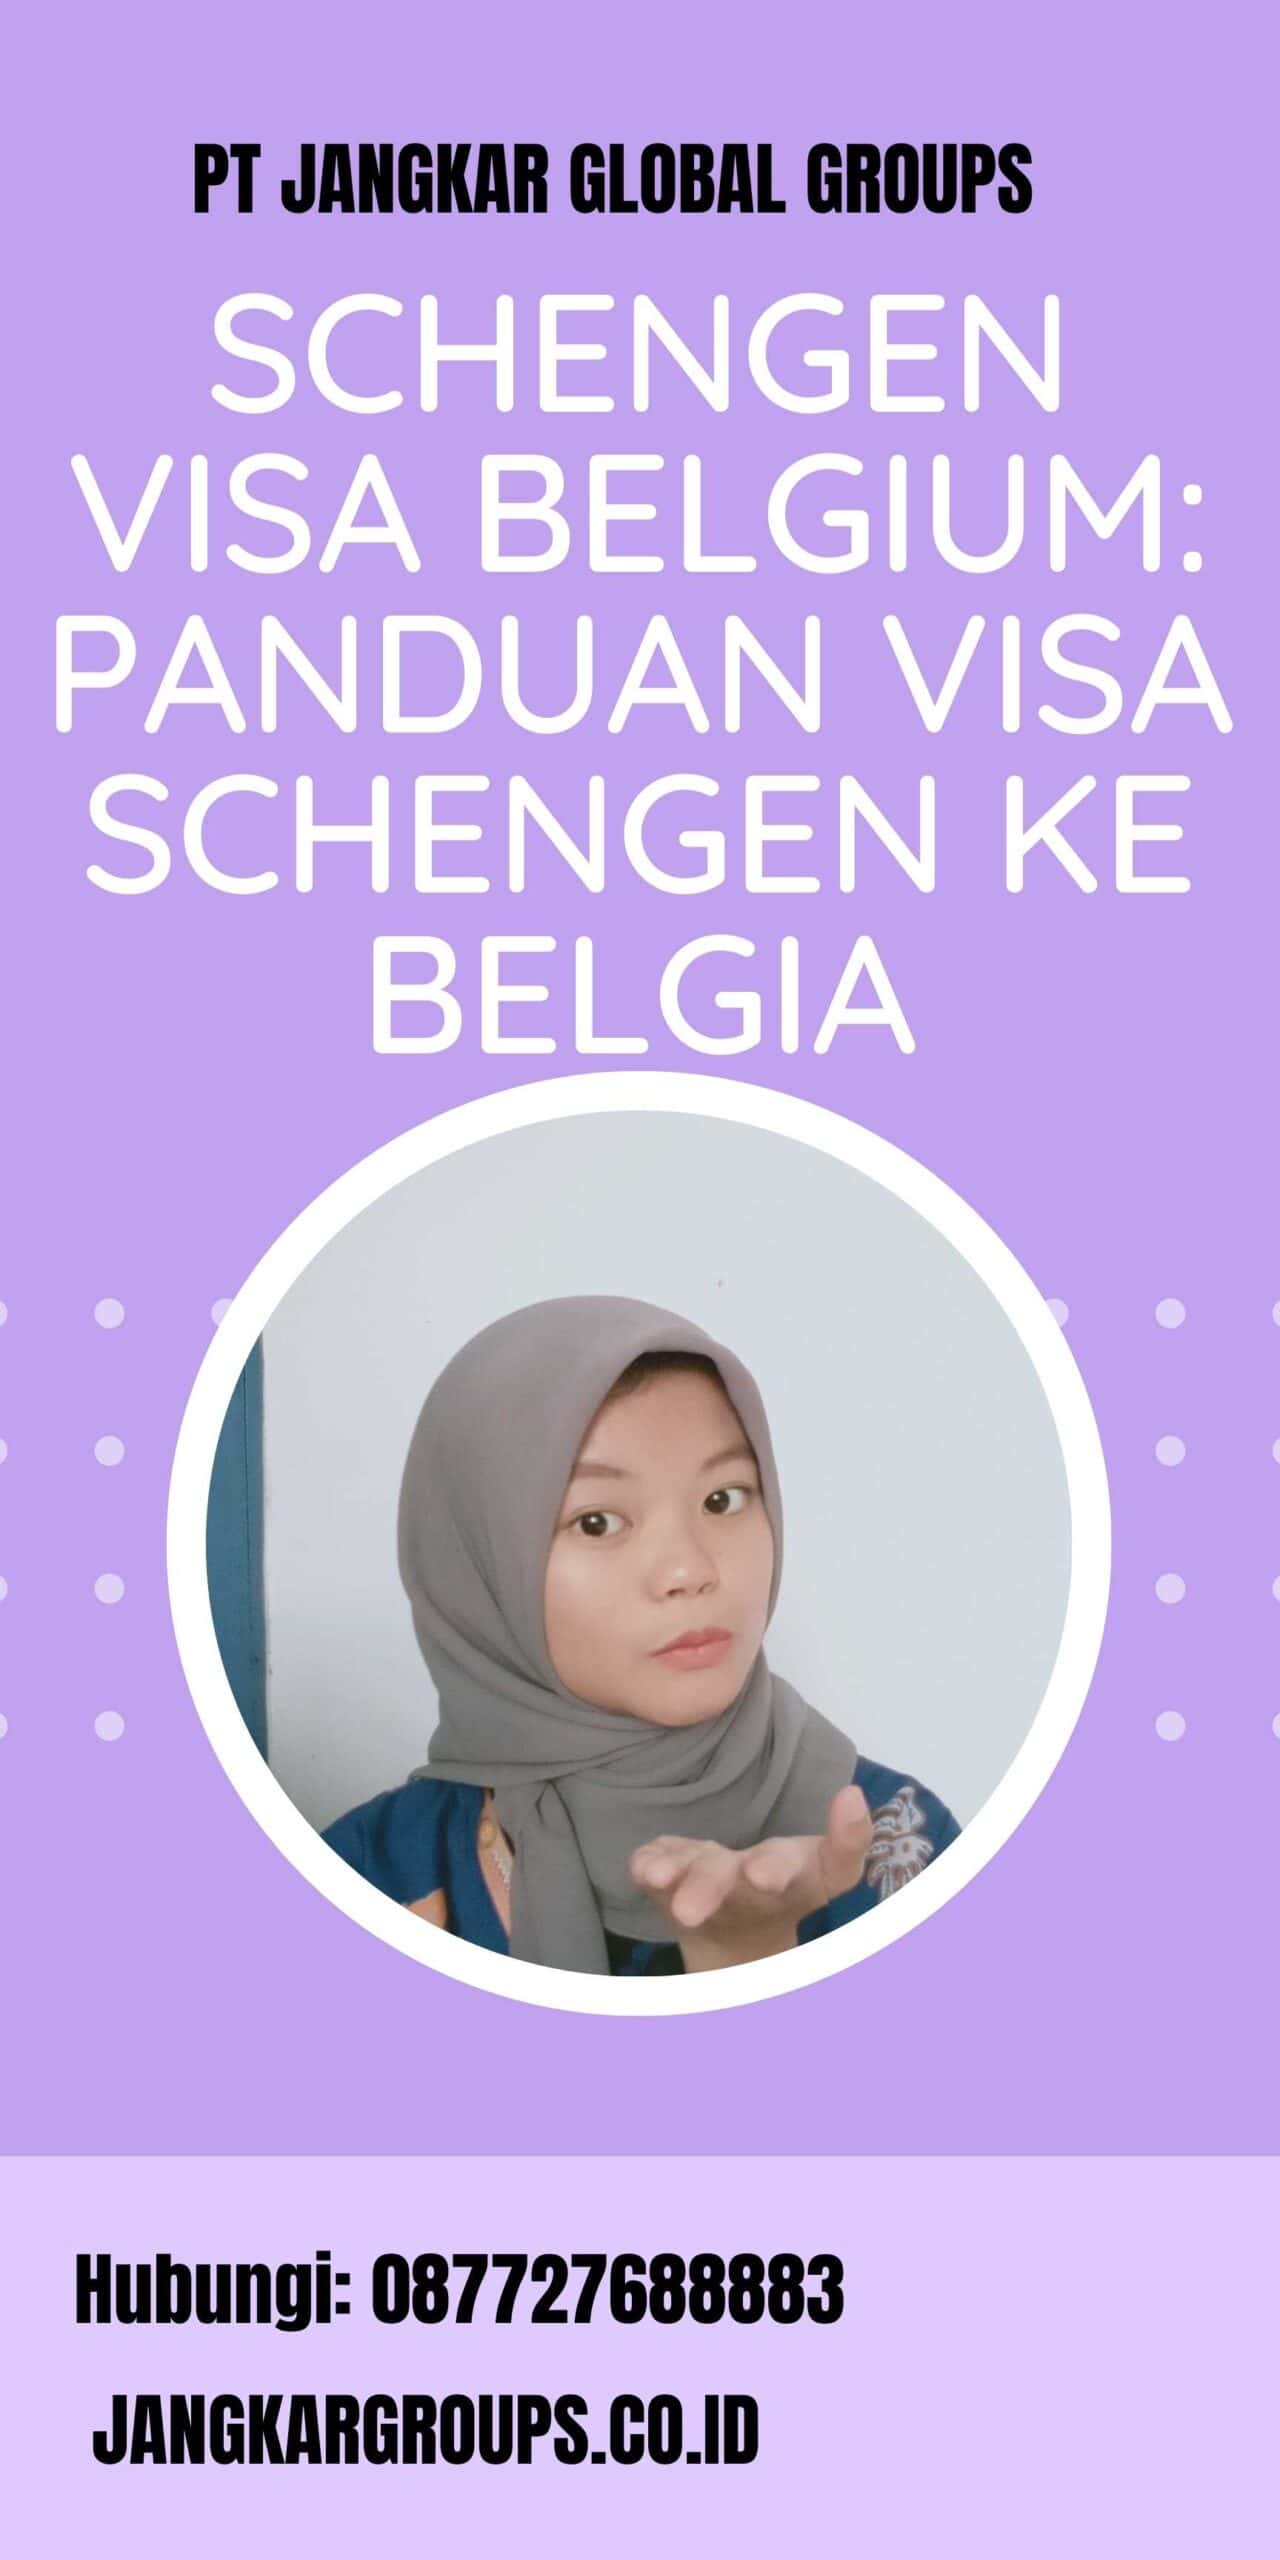 Schengen Visa Belgium Panduan Visa Schengen ke Belgia